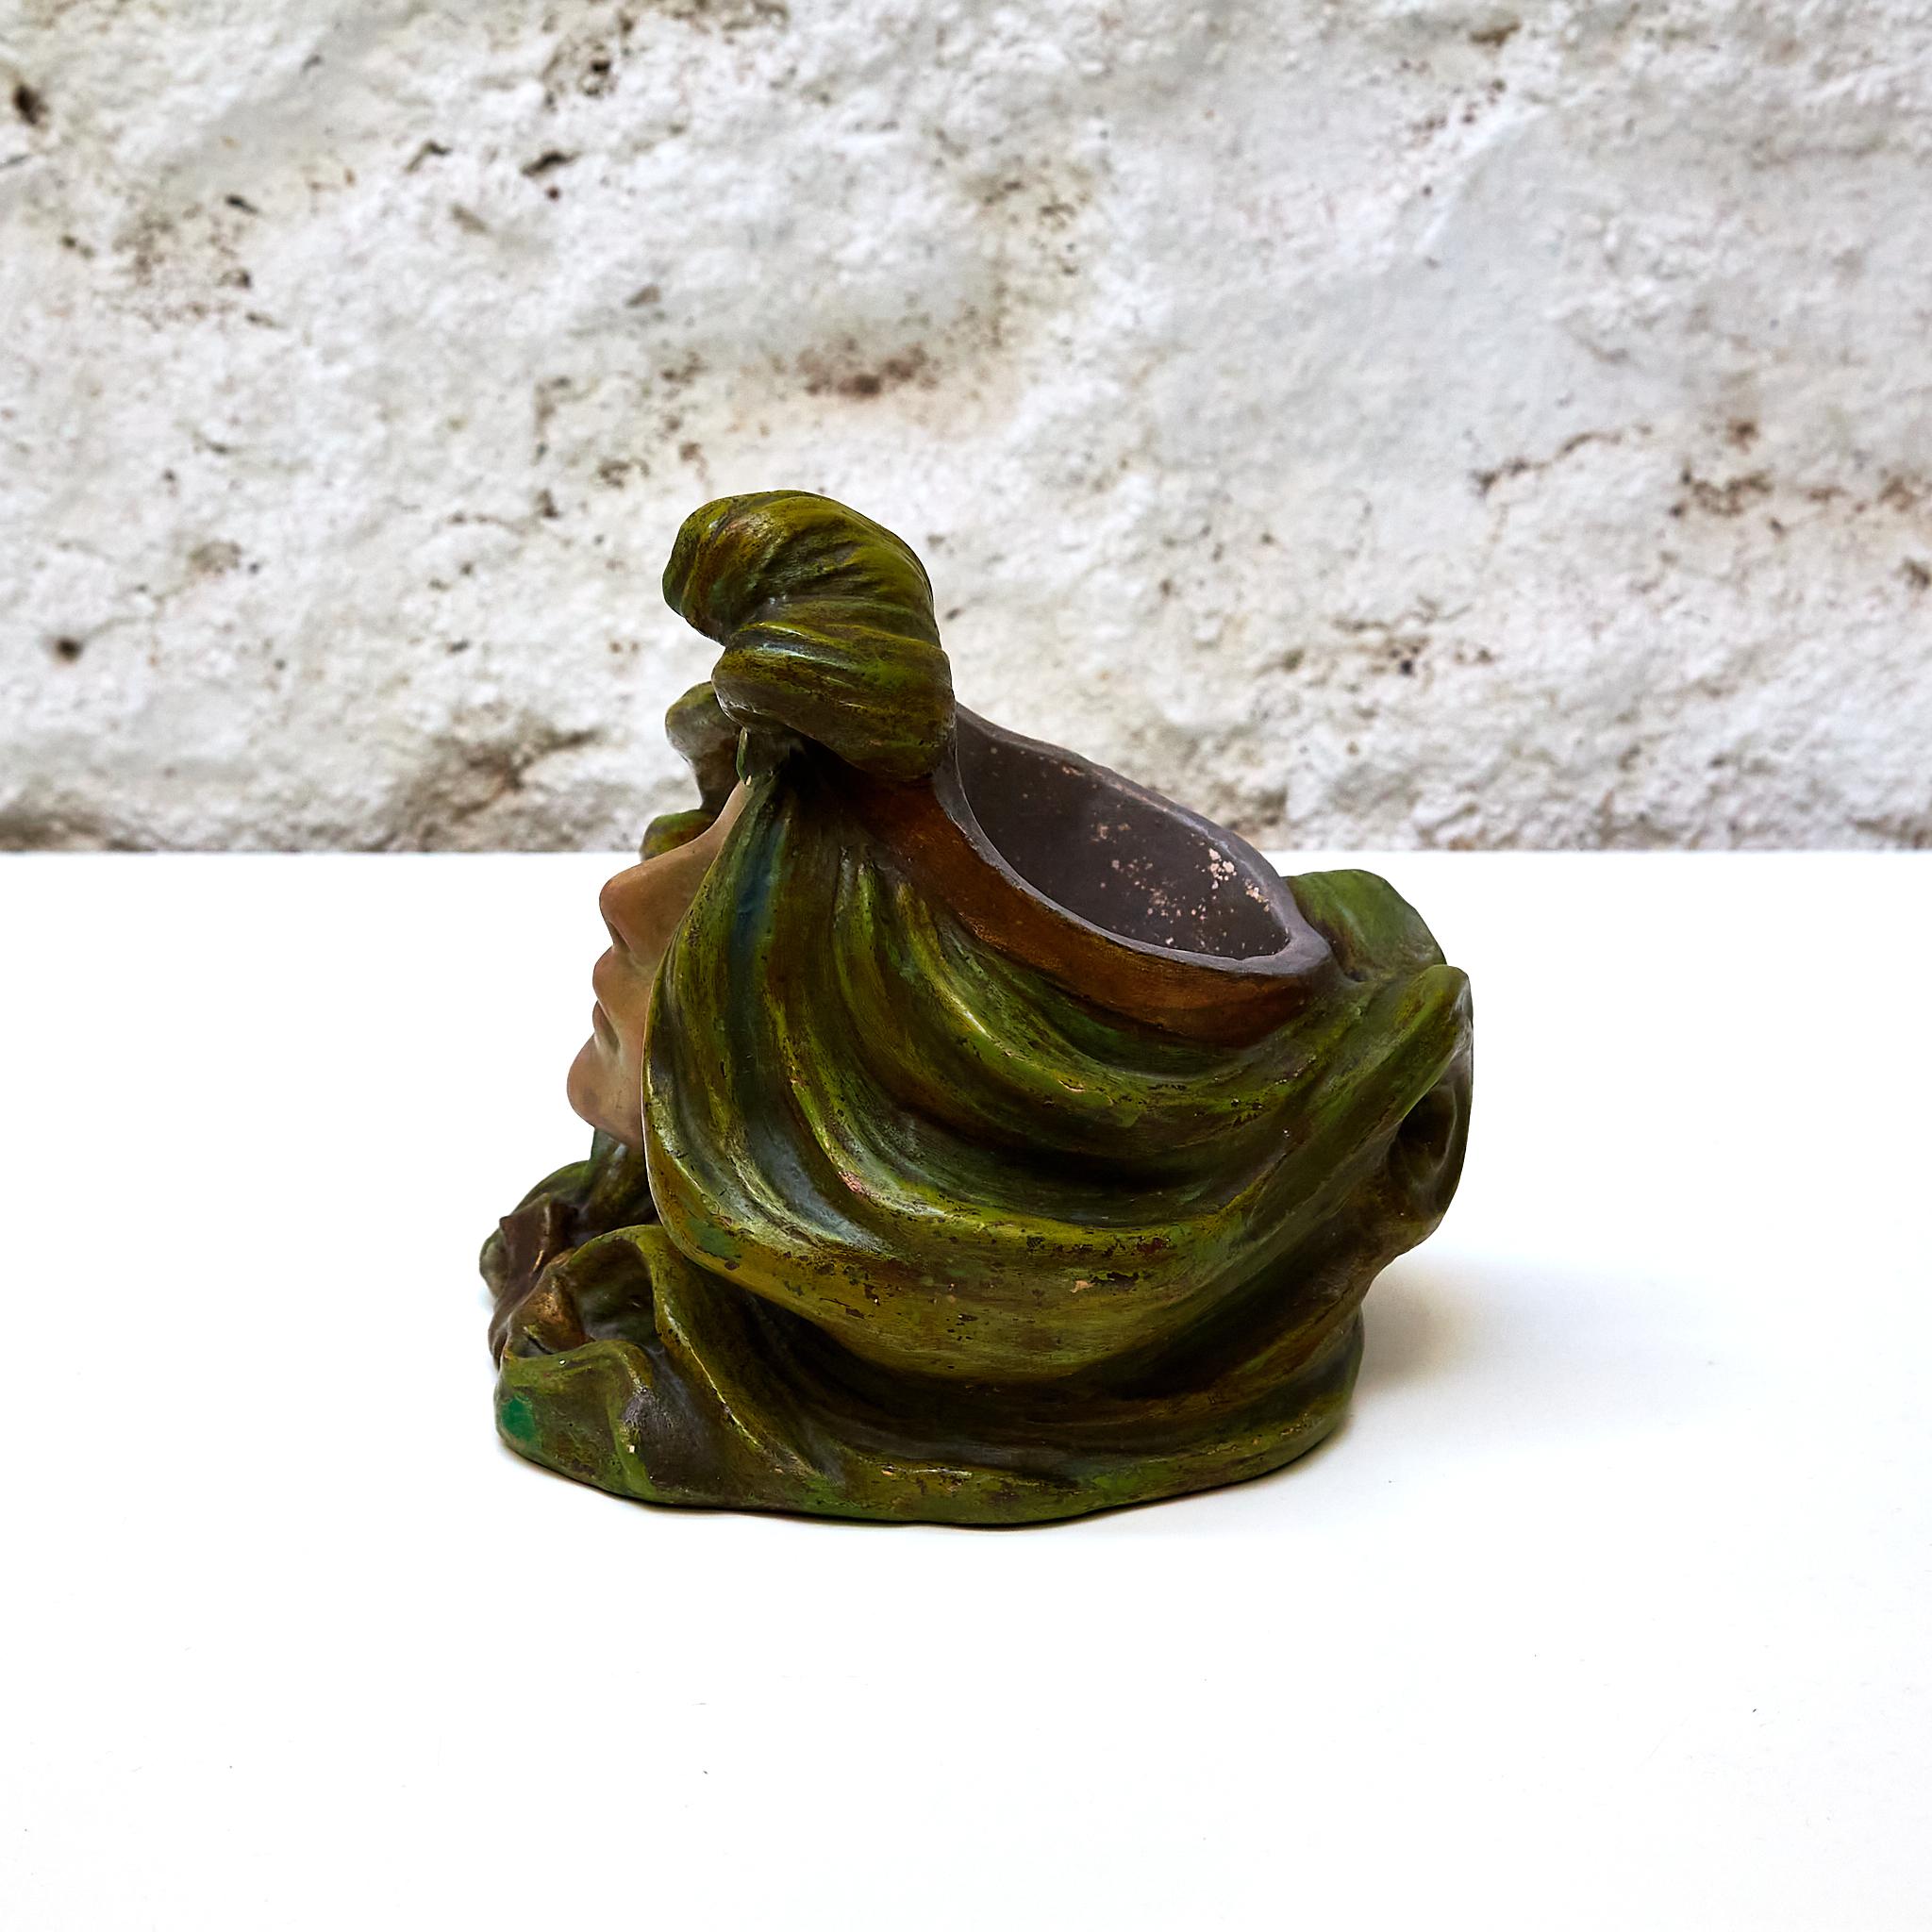 Vase sculpture de Josep Casanobas.

Fabriqué en Espagne, vers 1930.

En état d'origine avec une usure mineure conforme à l'âge et à l'utilisation, préservant une belle patine.

Matériaux : 
Céramique.

Dimensions : 
P 18 cm x L 18 cm x H